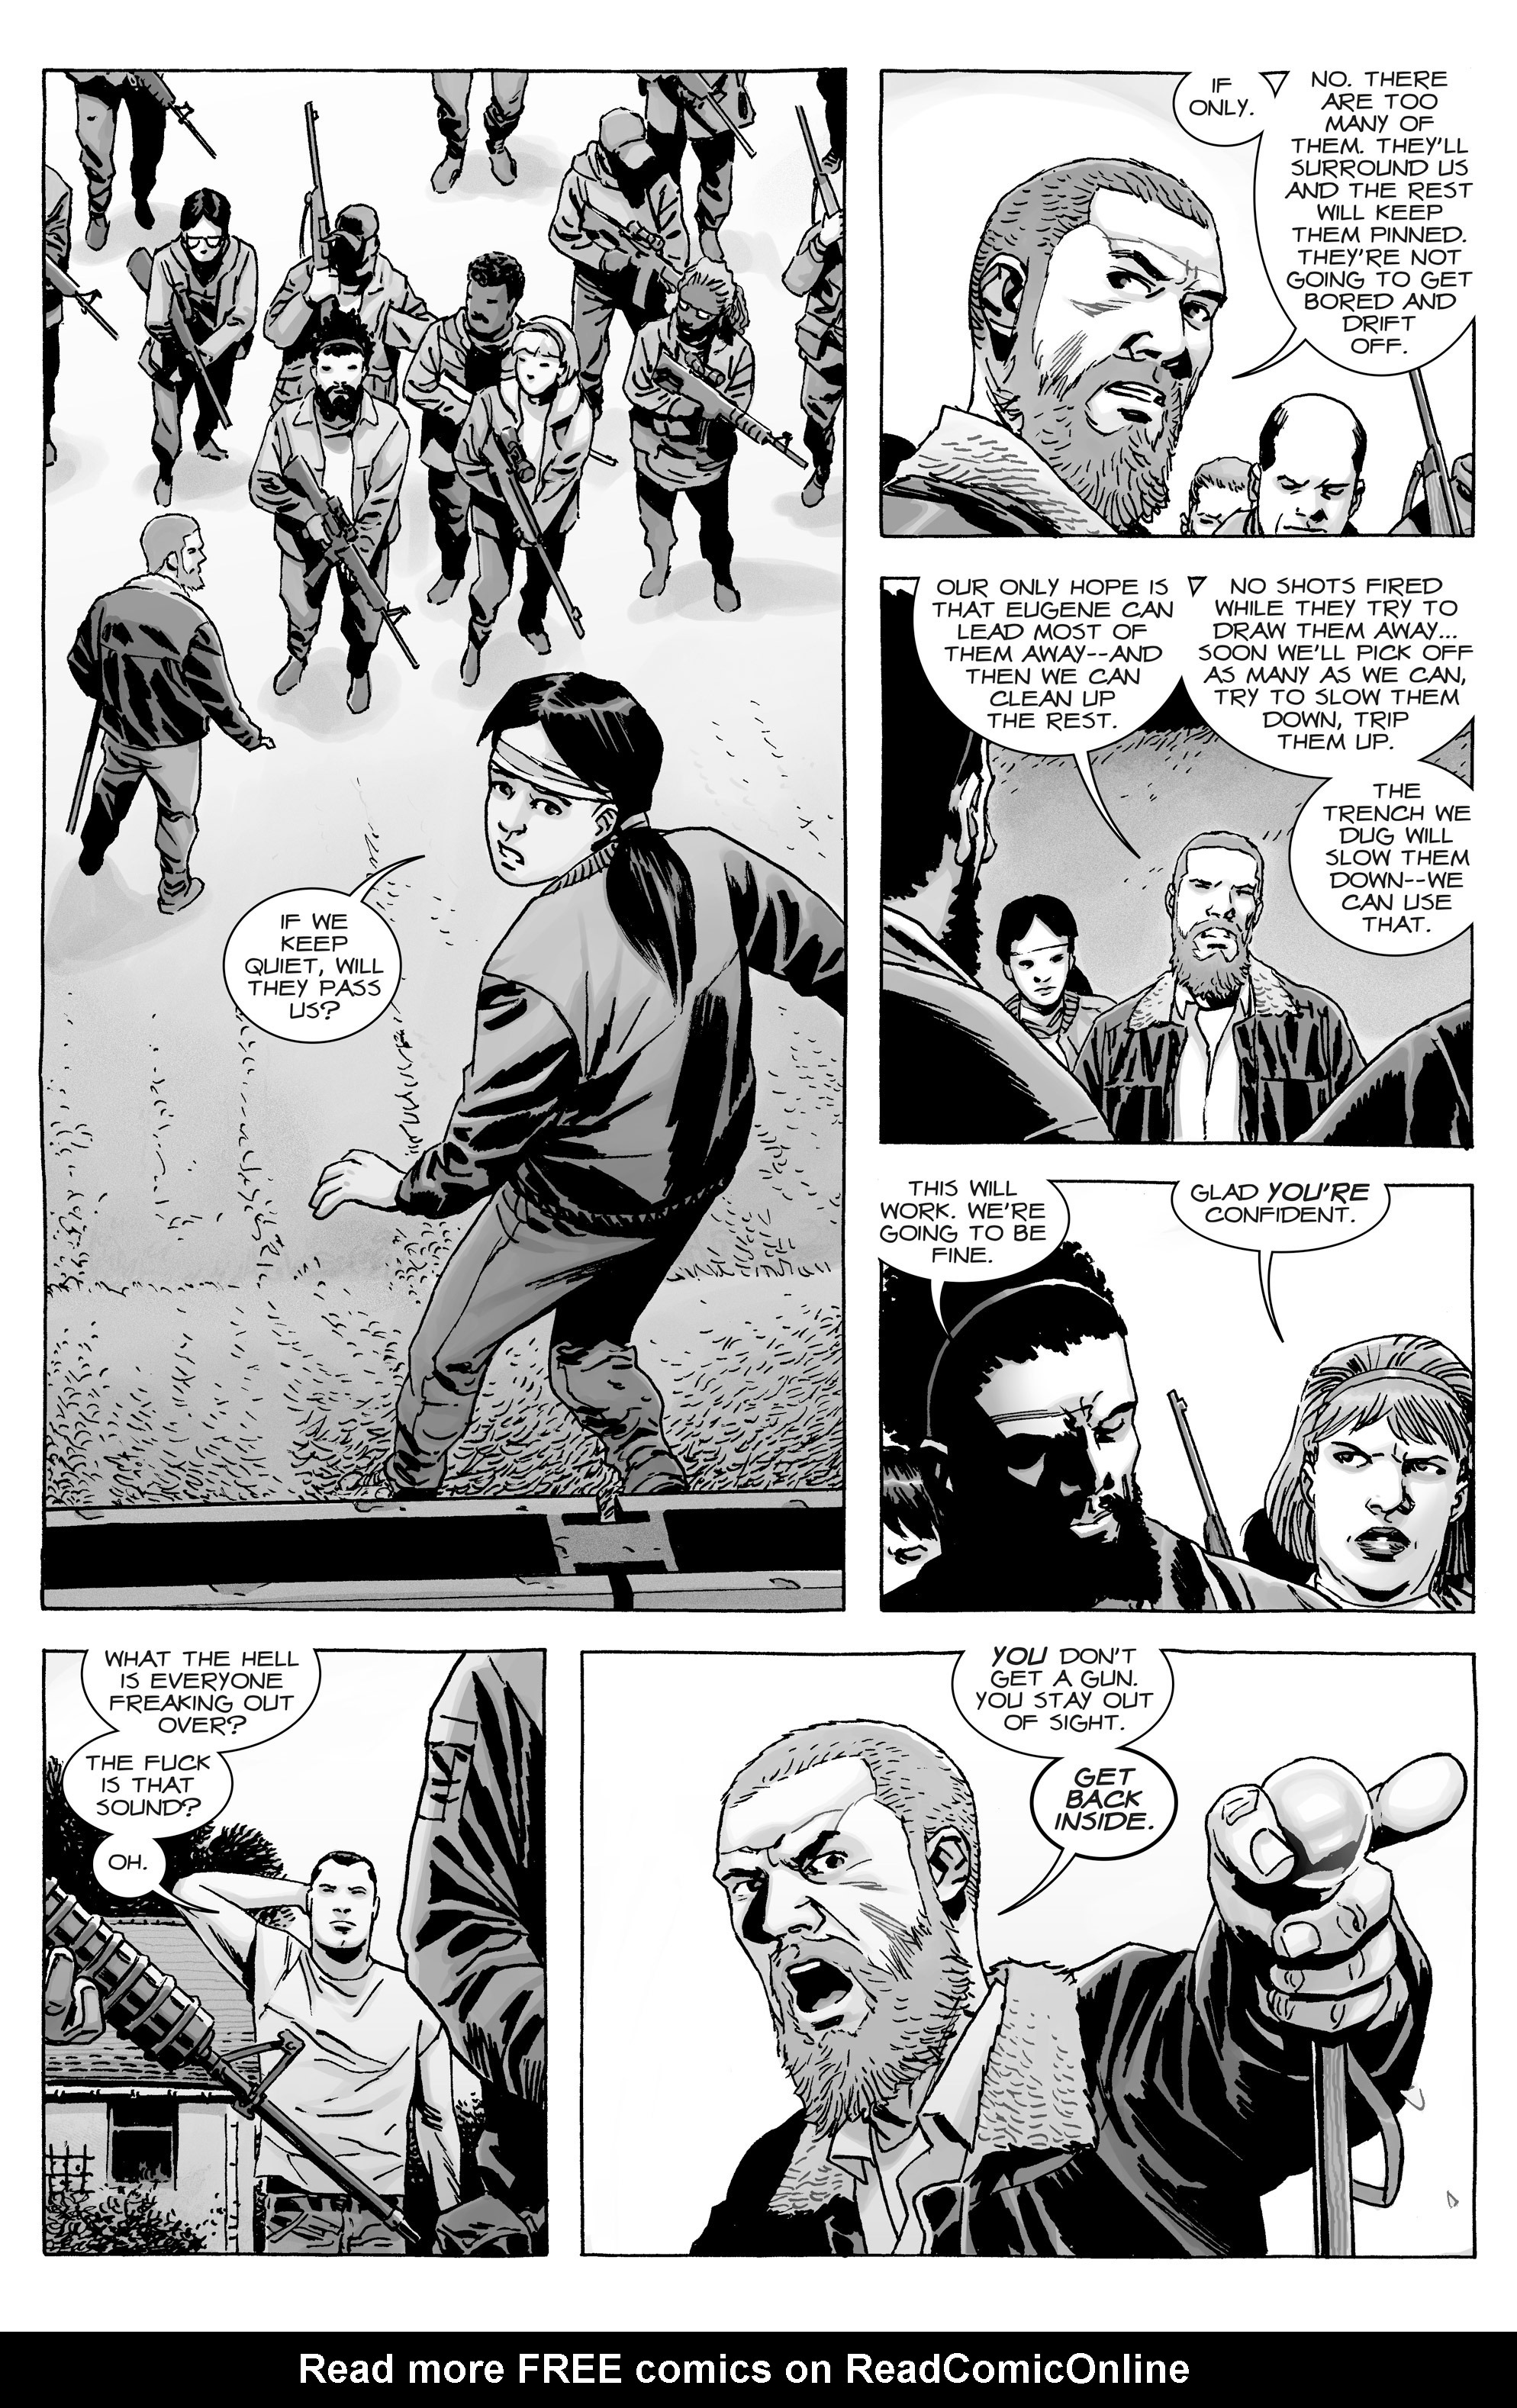 Read online The Walking Dead comic -  Issue #163 - 12